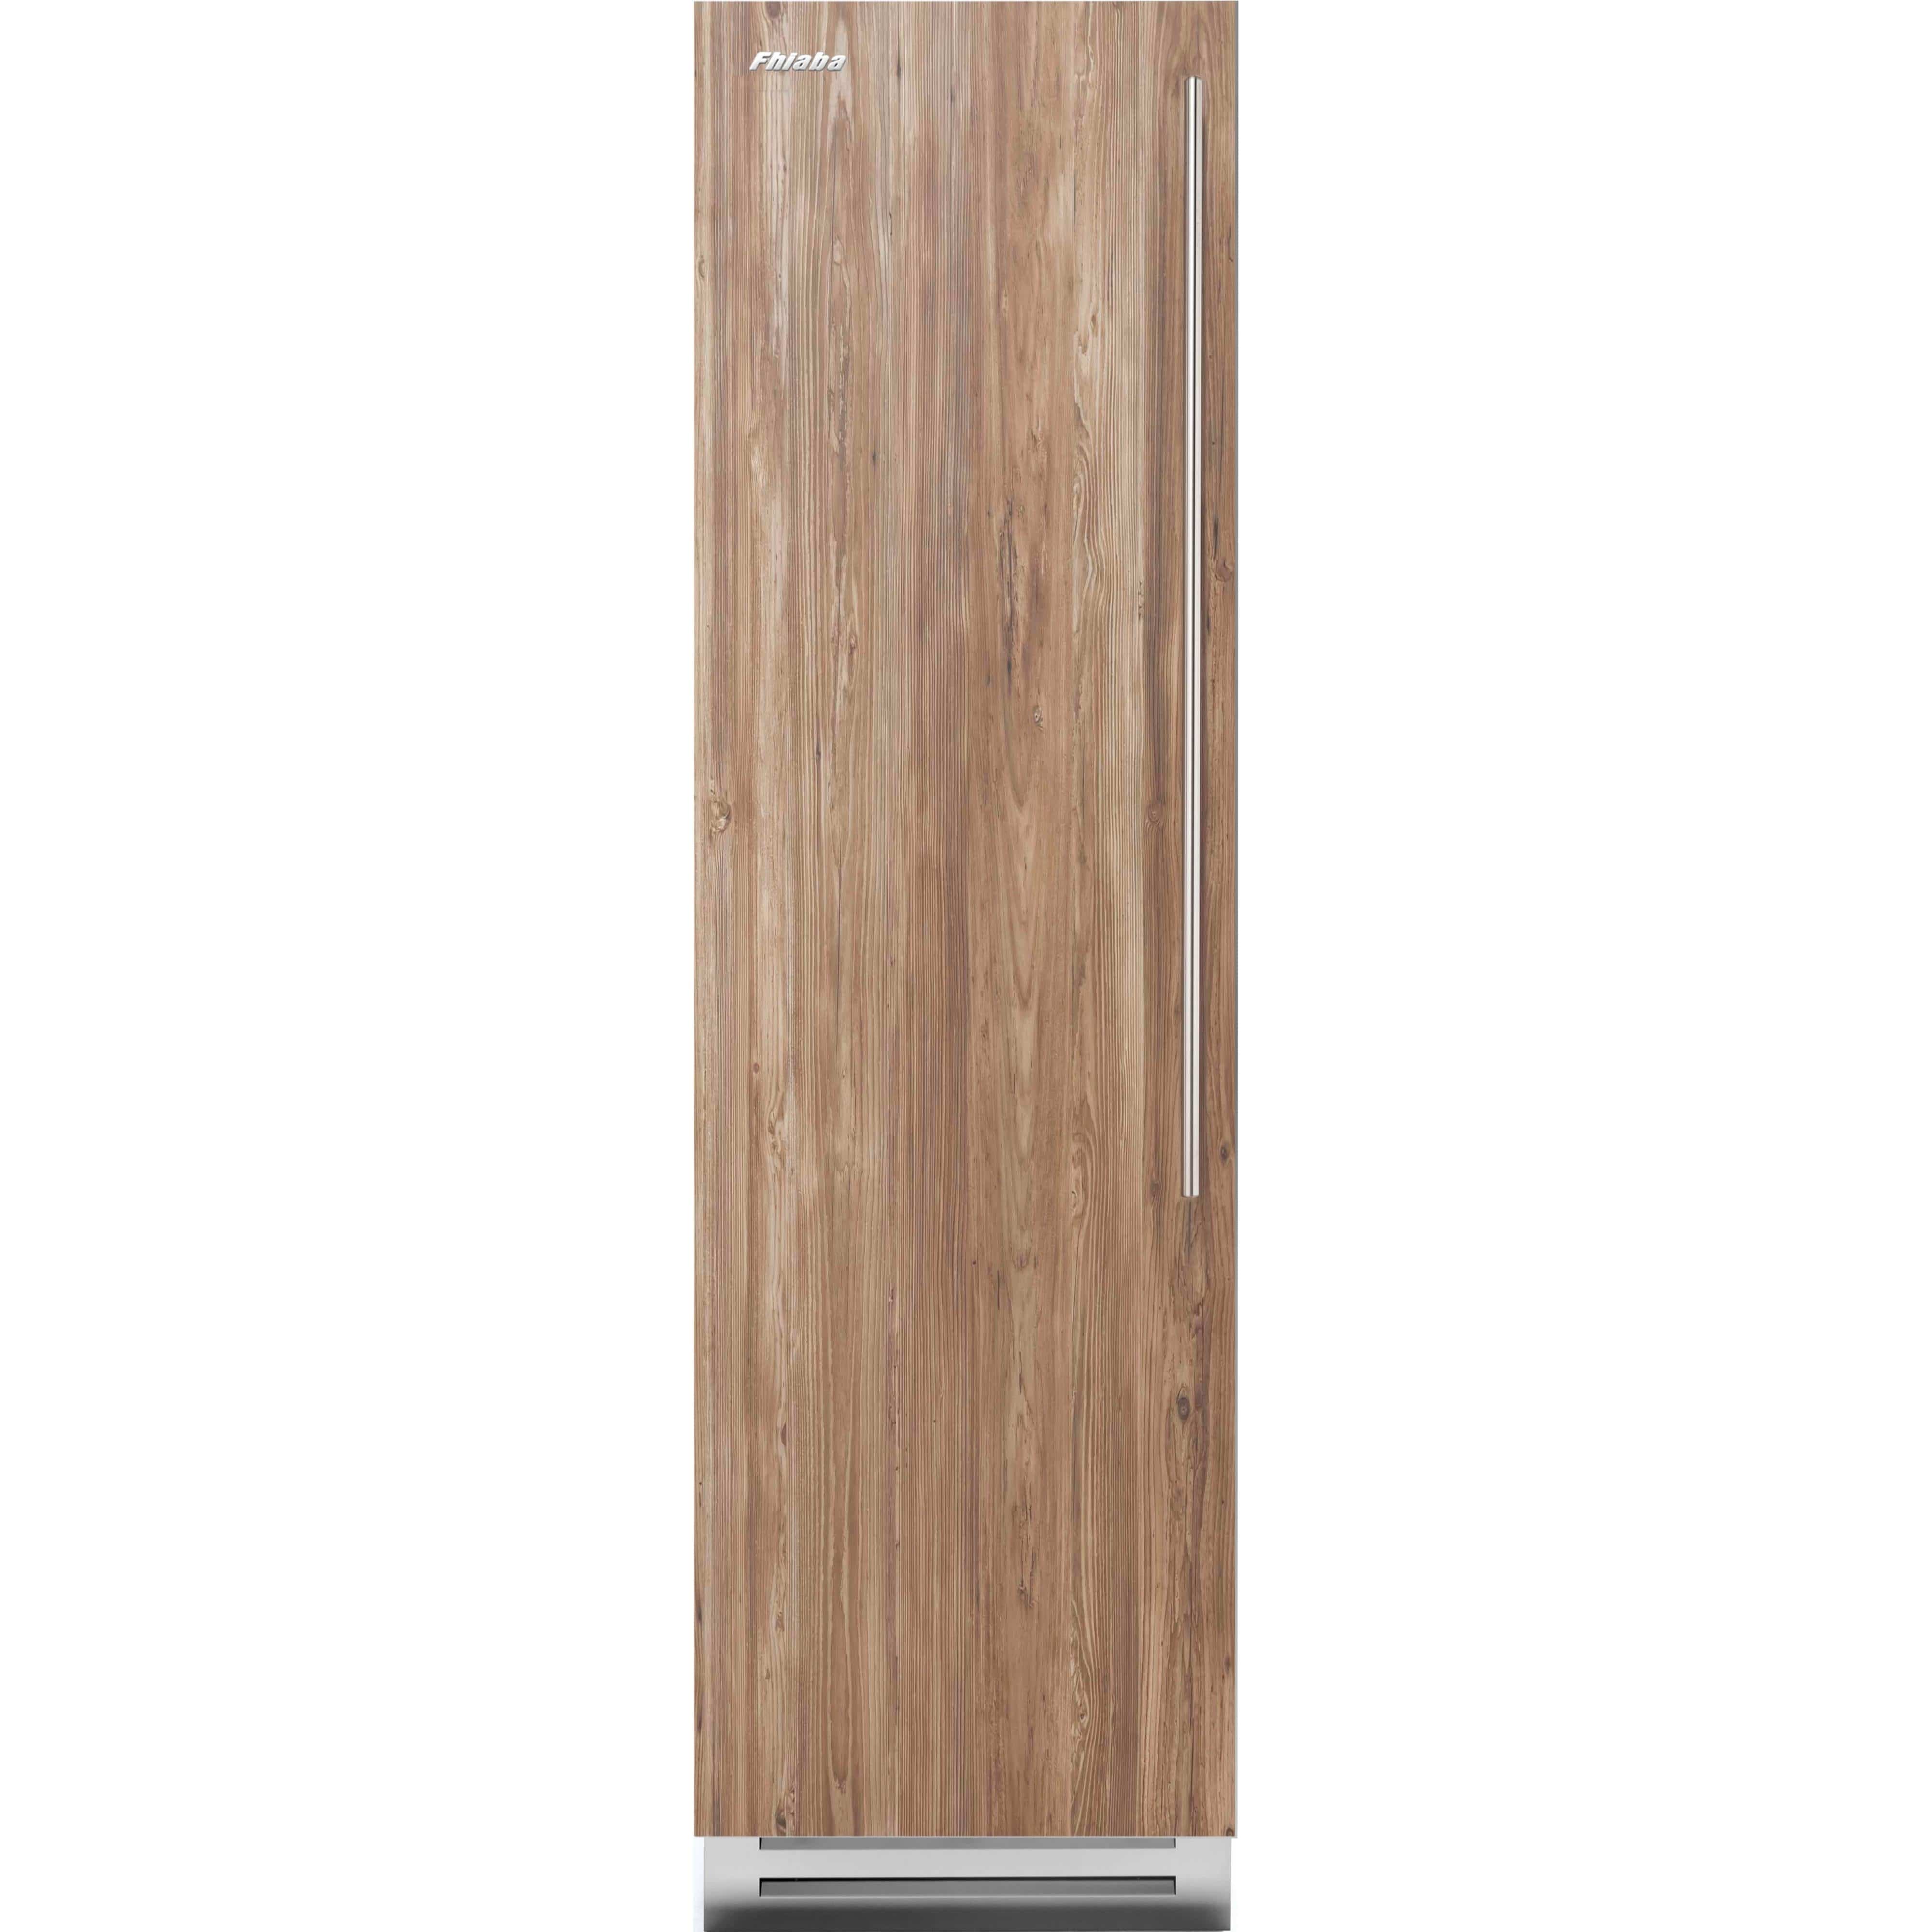 Fhiaba 12.67 cu. ft. Upright Freezer with Smart Touch TFT Display FI24FZC-LO2 Freezers FI24FZCLO2 Luxury Appliances Direct